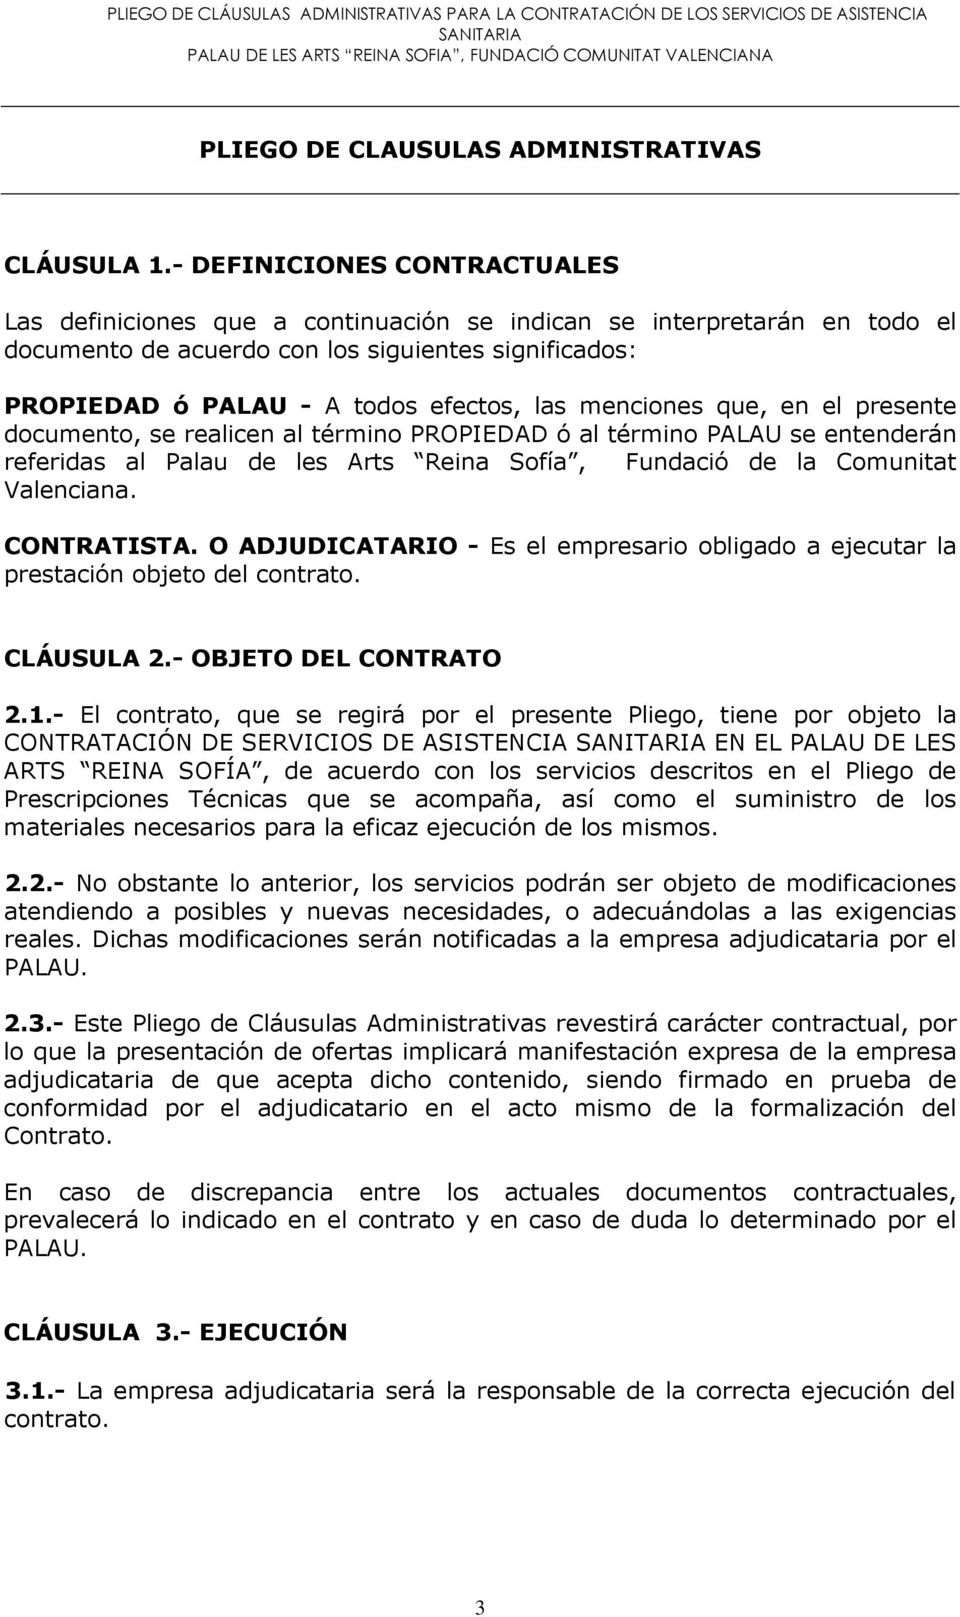 menciones que, en el presente documento, se realicen al término PROPIEDAD ó al término PALAU se entenderán referidas al Palau de les Arts Reina Sofía, Fundació de la Comunitat Valenciana. CONTRATISTA.